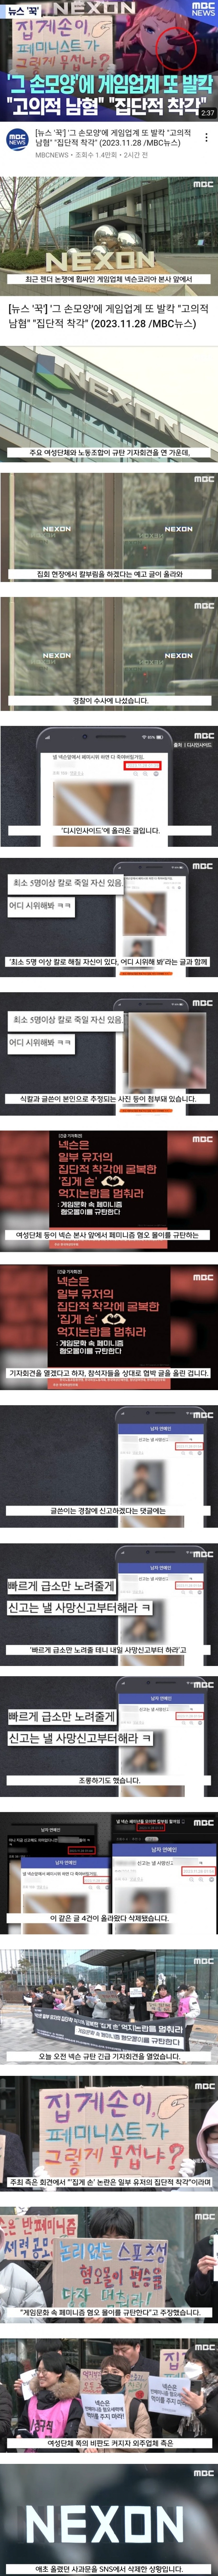 남혐 게임 사건에 대한 MBC의 보도 - 3